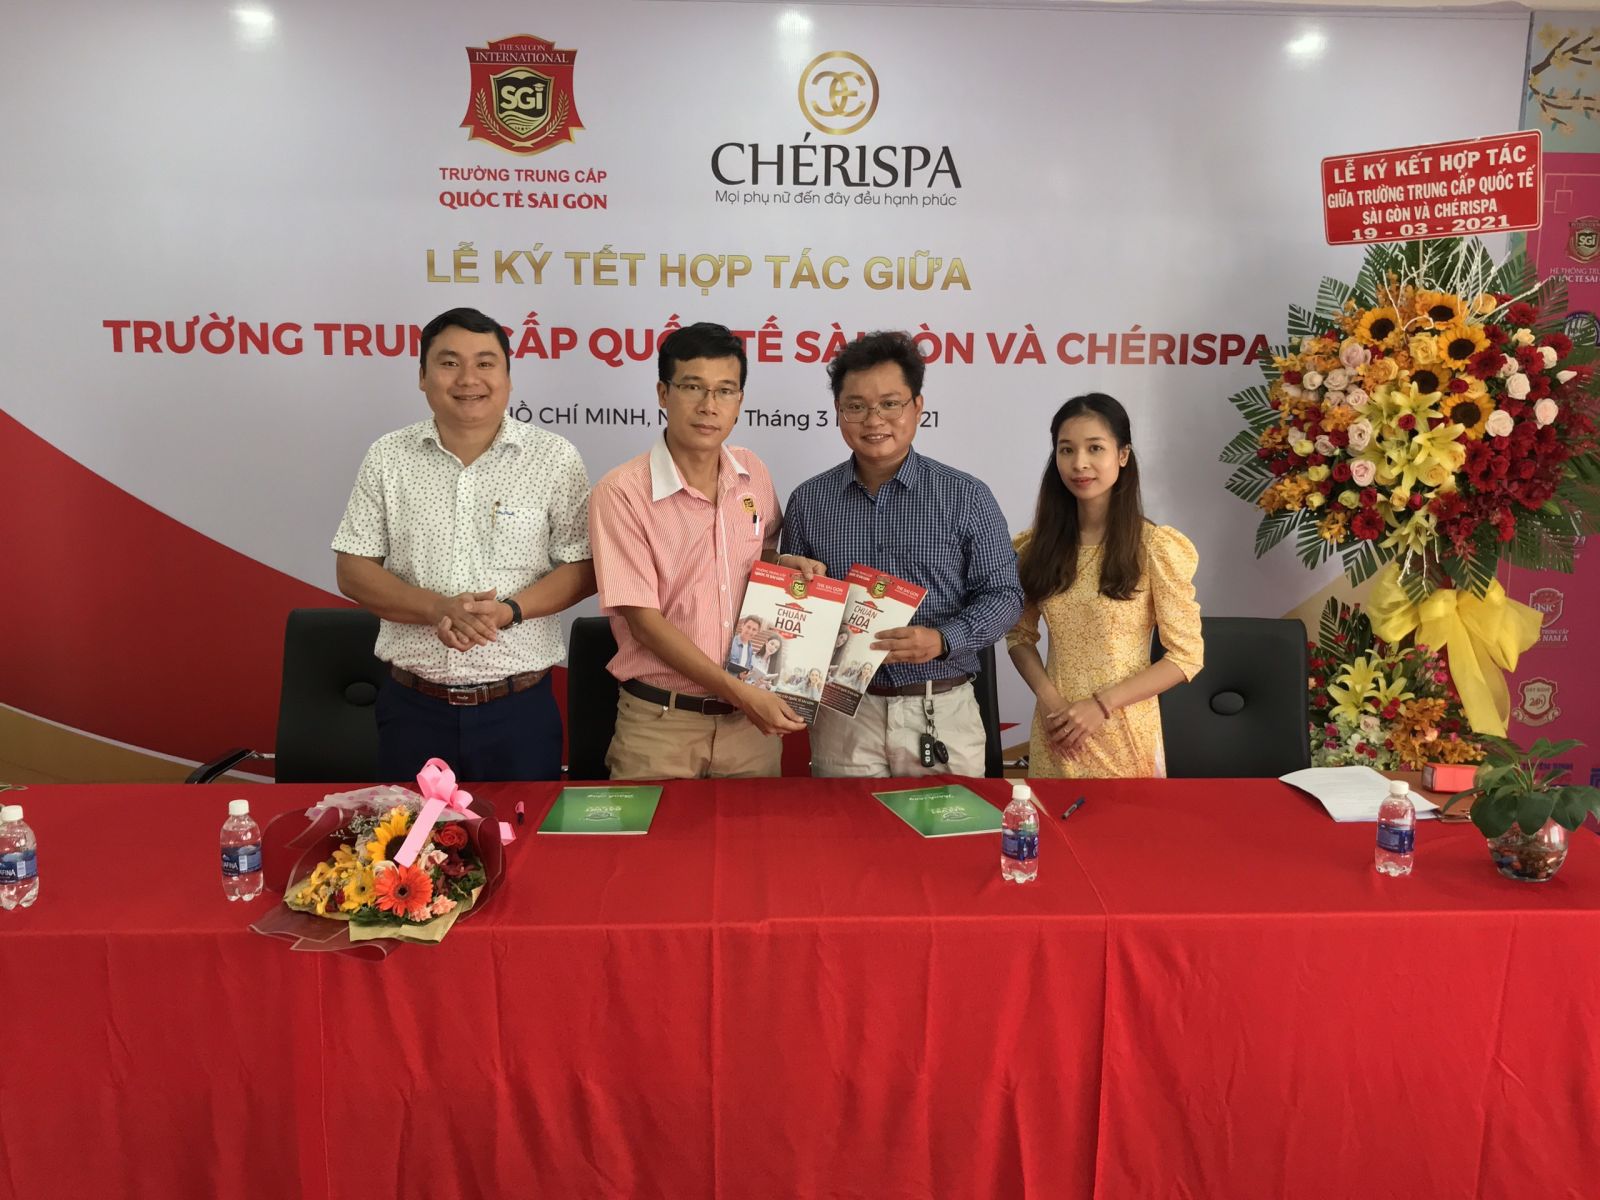 Trường trung cấp Quốc tế Sài Gòn hợp tác với Che’ri Spa đào tạo nghề chăm sóc sắc đẹp